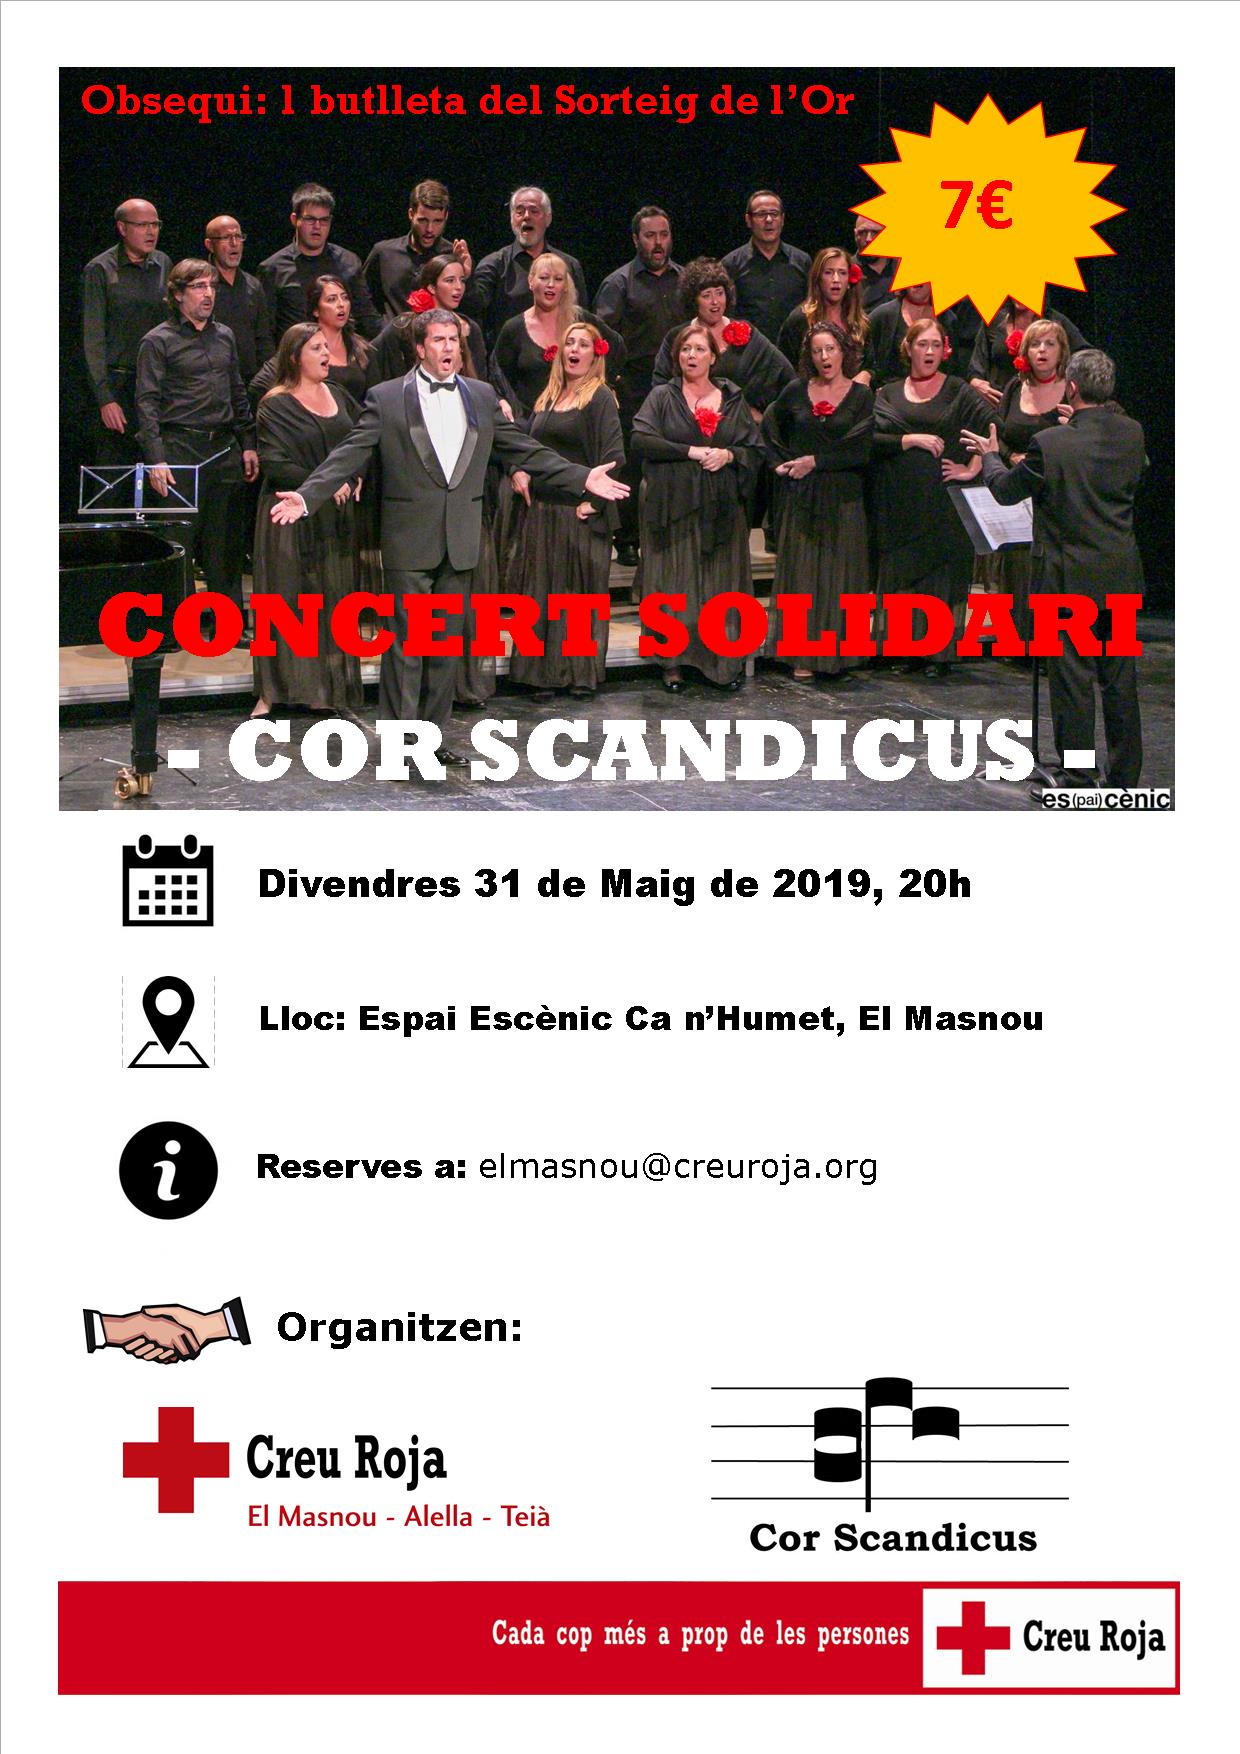 Concert solidari del Cor Scandicus (Atenció: activitat anul·lada!)